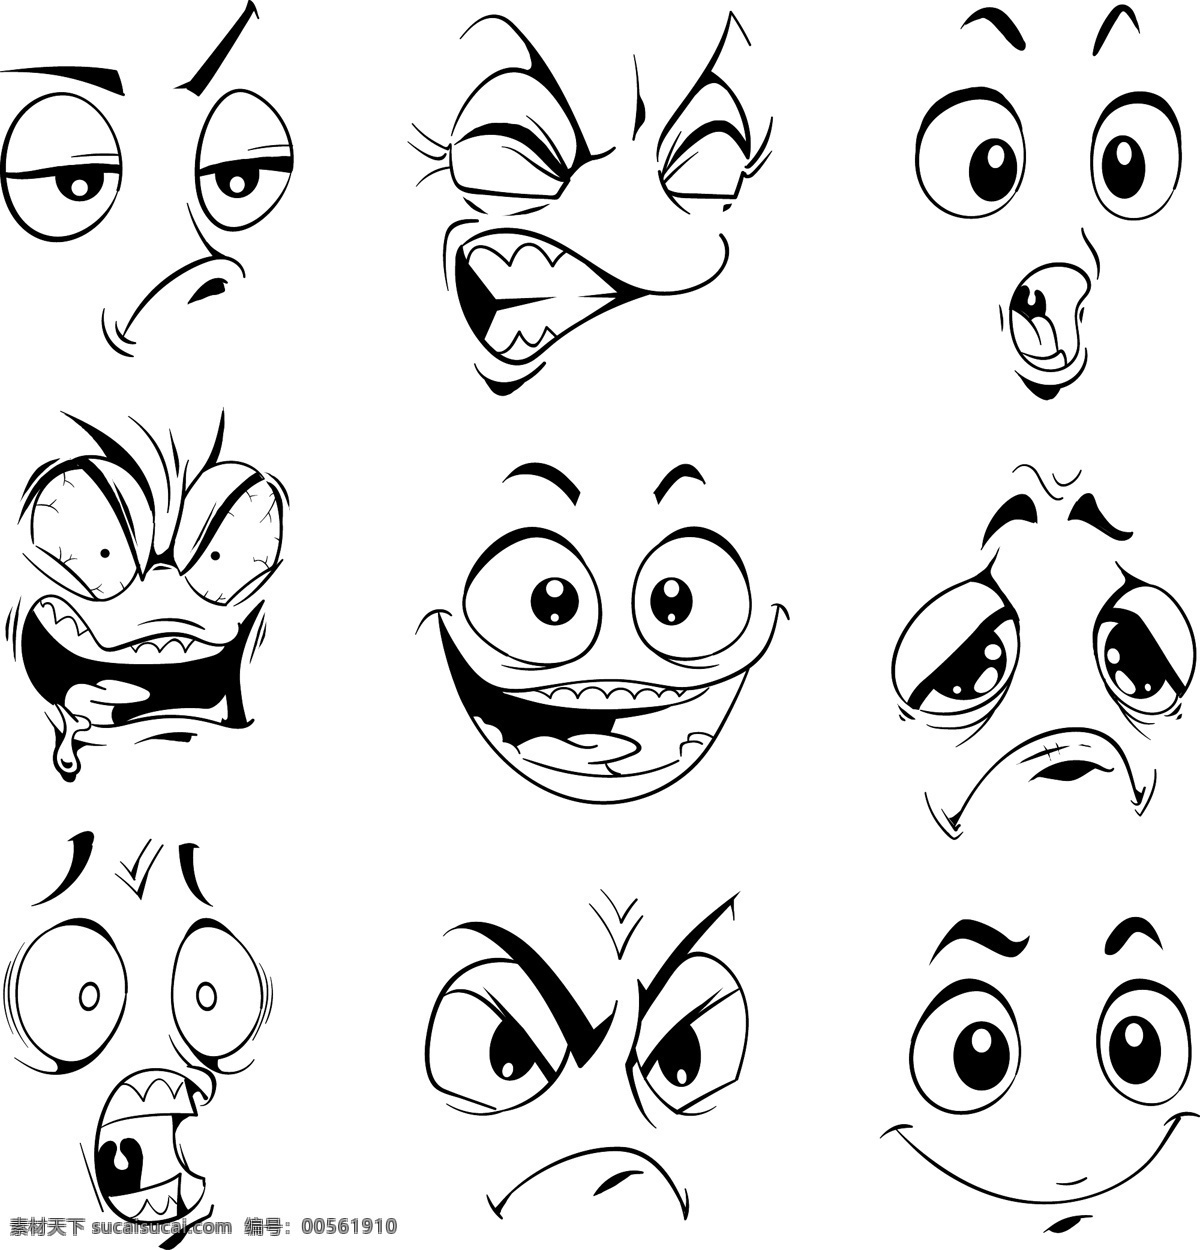 矢量表情 表情 各种表情 喜痛哀乐表情 简约表情 简洁表情